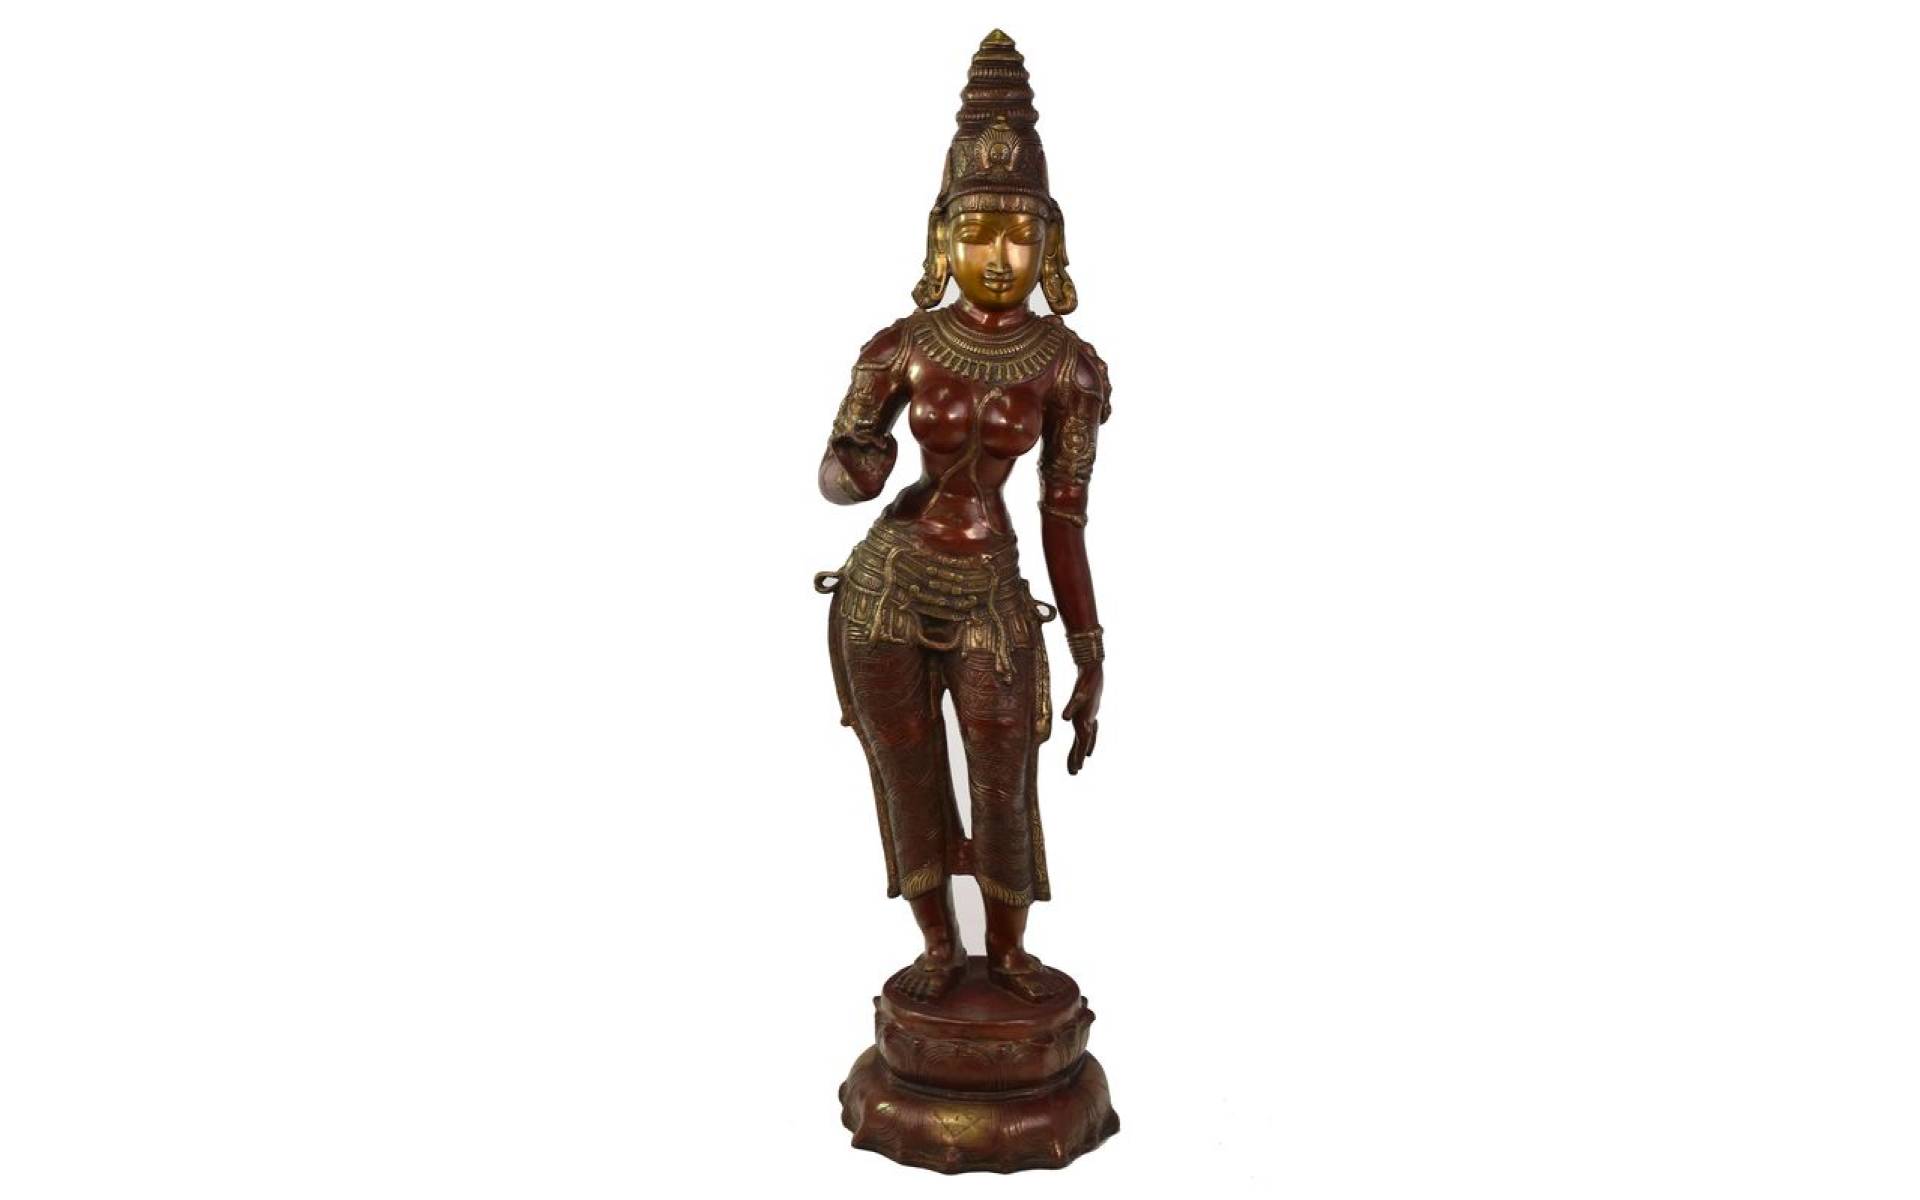 Mosadzná socha bohyne Parvati, 19x26x115cm